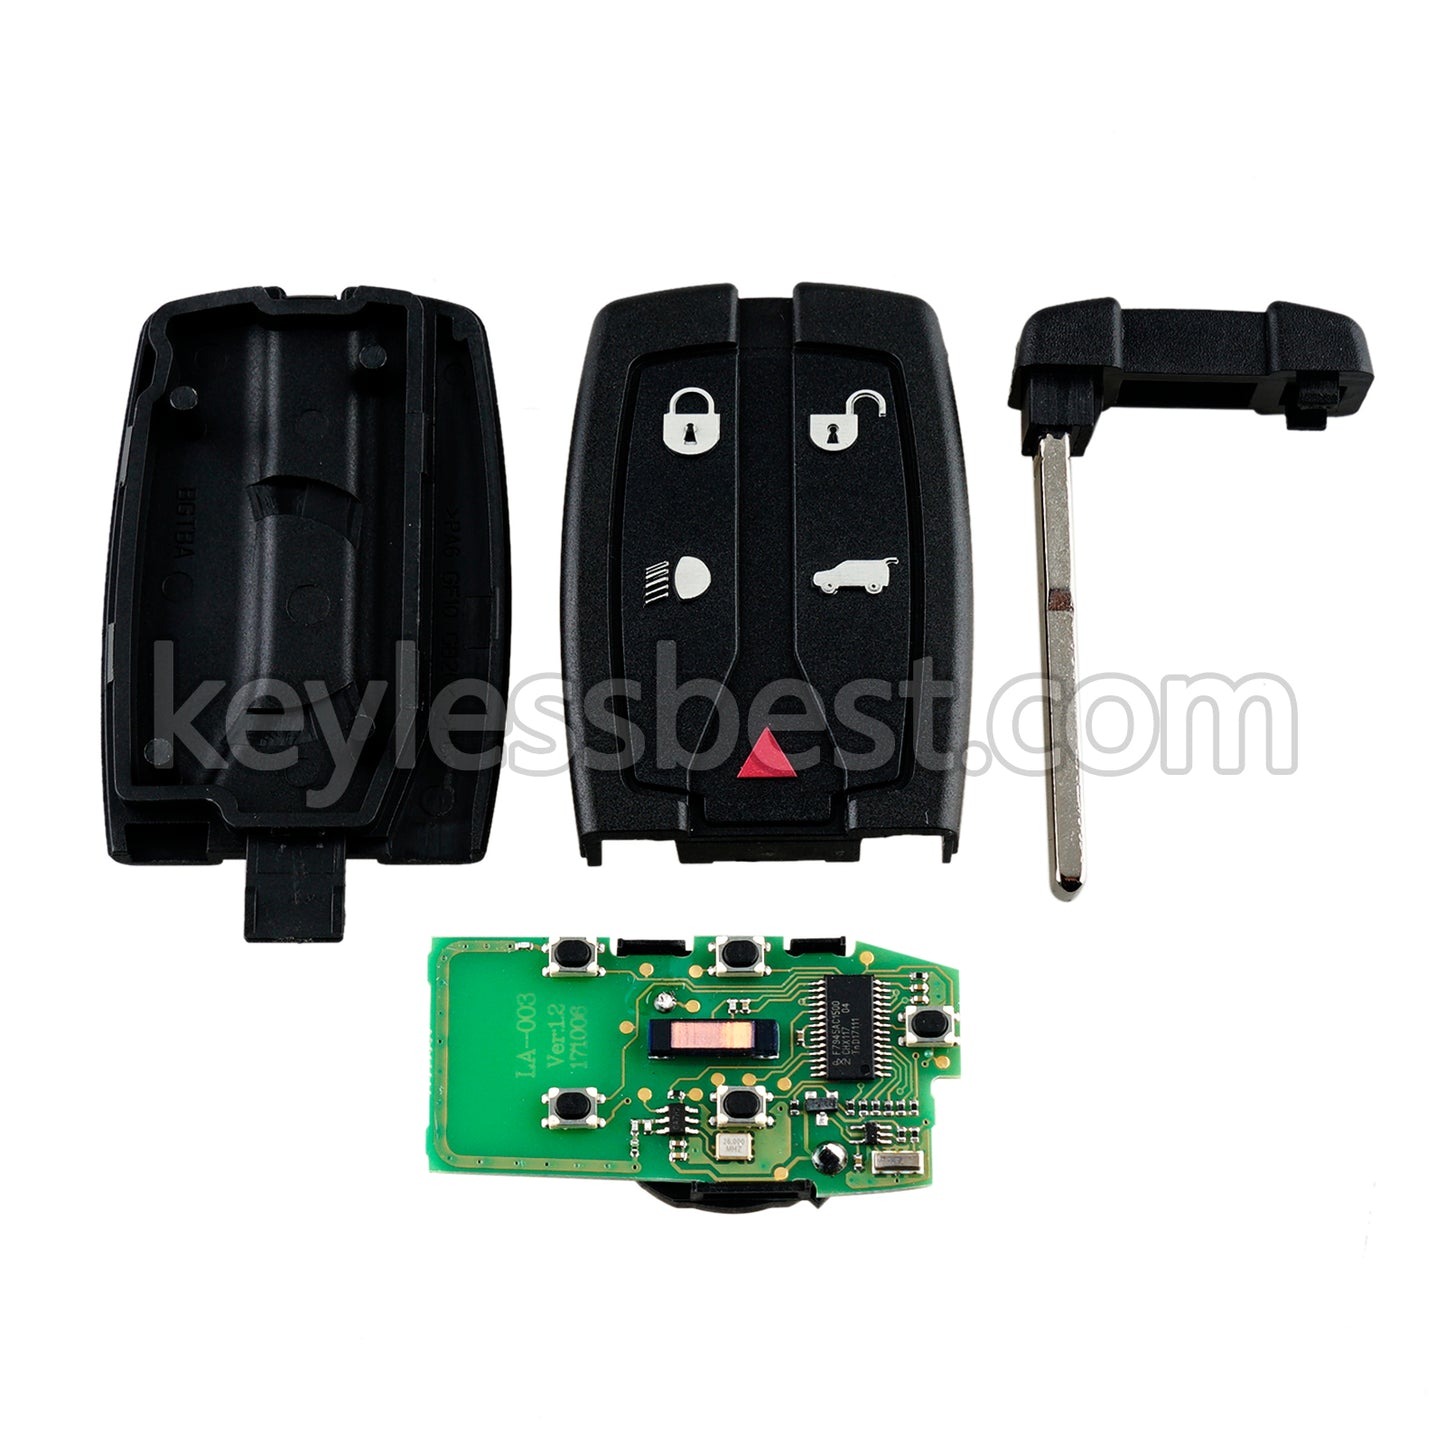 2006-2012 LR2 Freelander 2 / 5 Buttons Remote Key / NT8TX9 NT1-TX9 / 315MHz